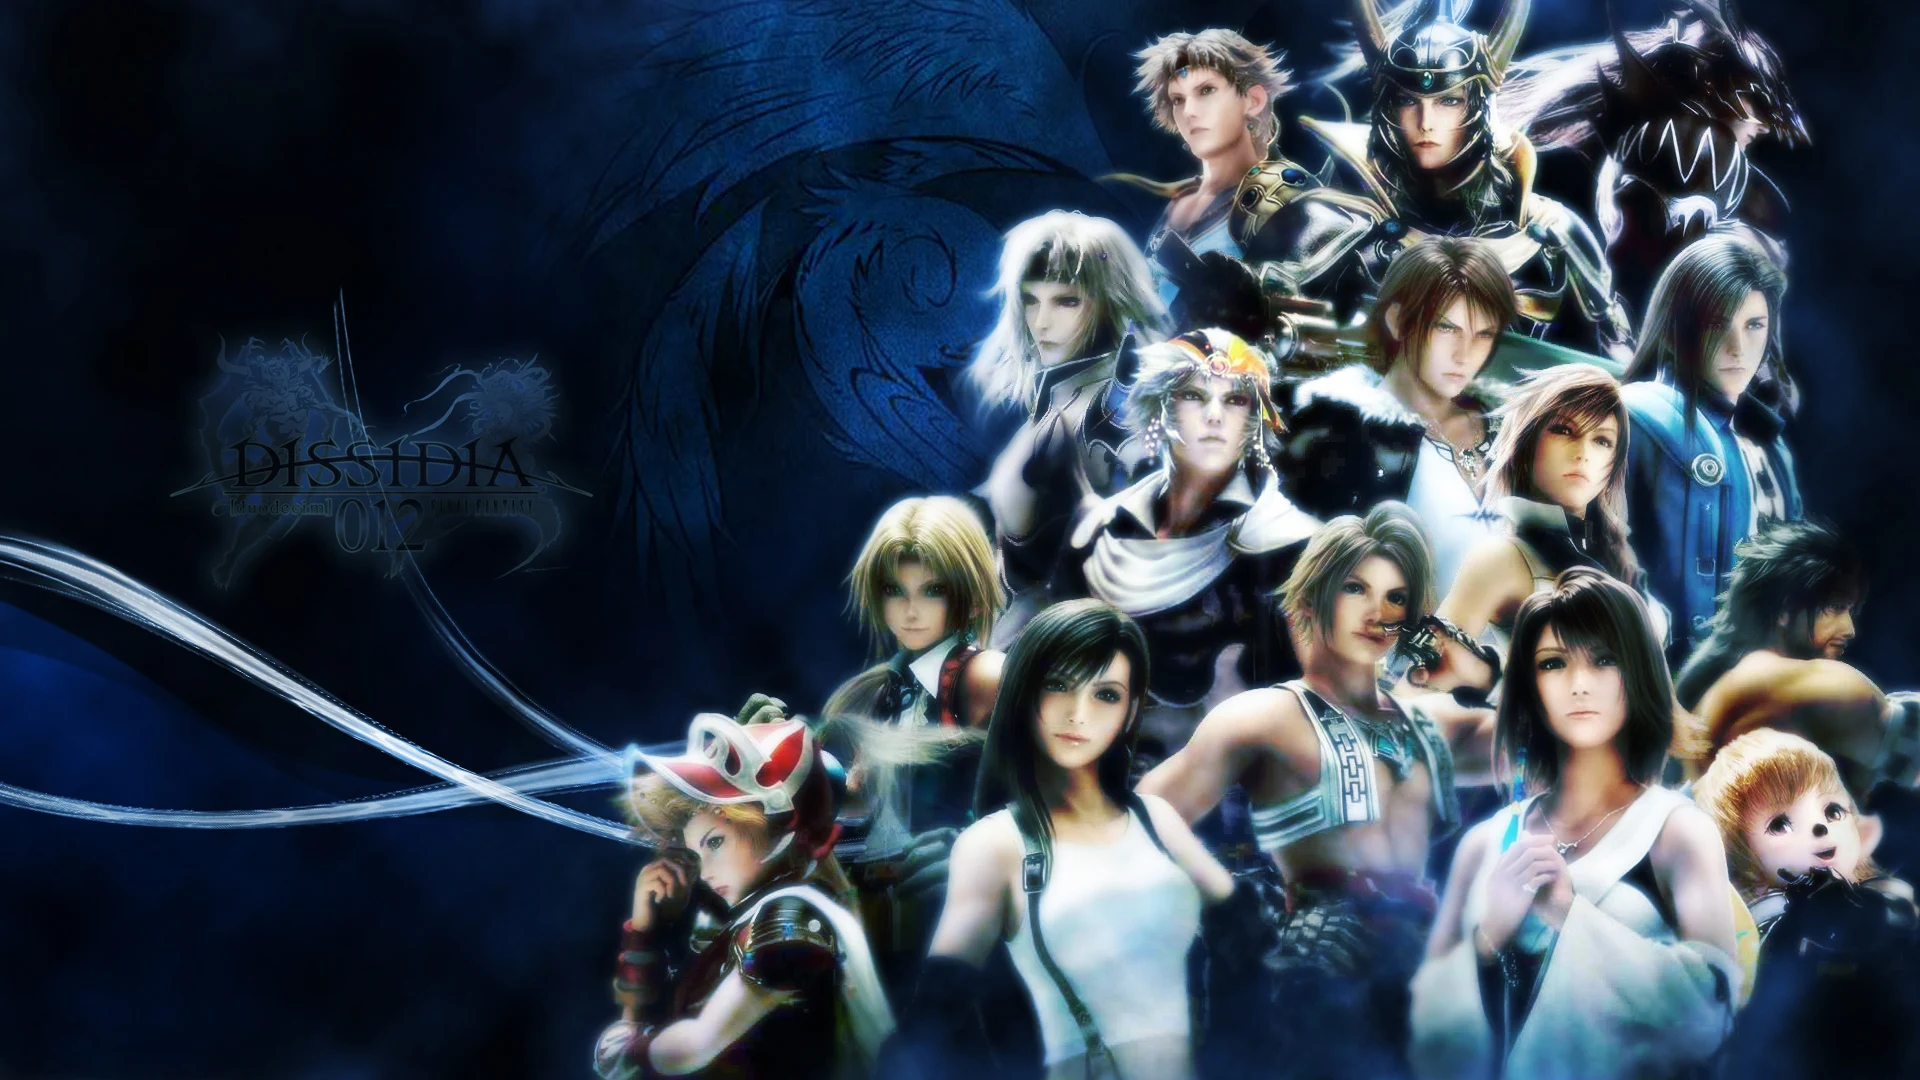 Best of Final Fantasy Image